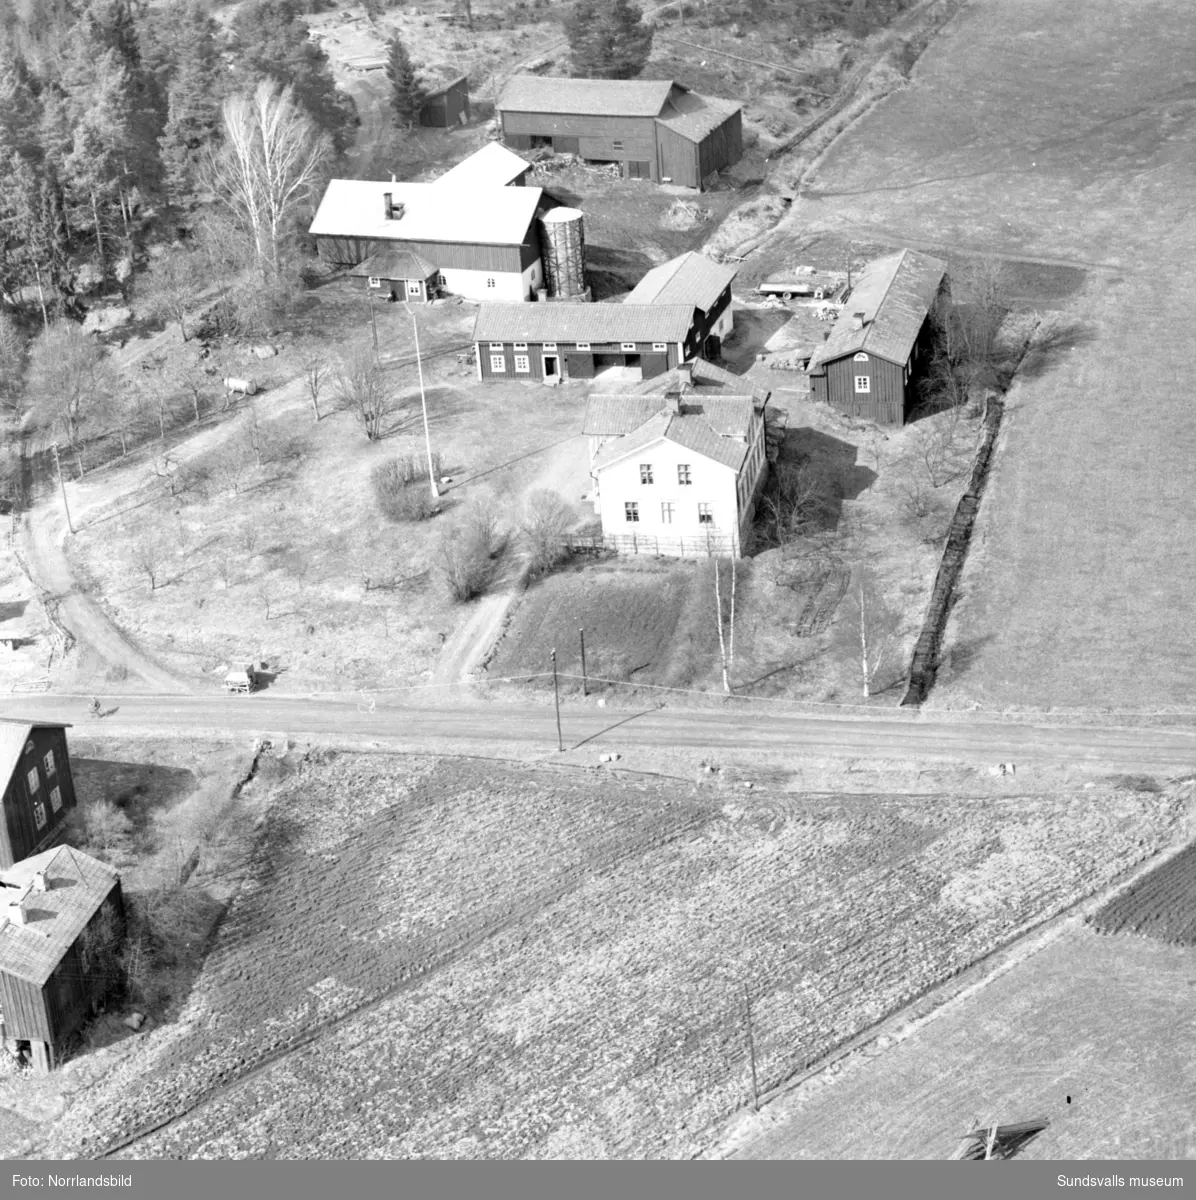 Flygfoto över en oidentifierad gård, troligen någonstans i Selånger. På bild två har helikoptern landat på en lägda och människor har samlats runt den.